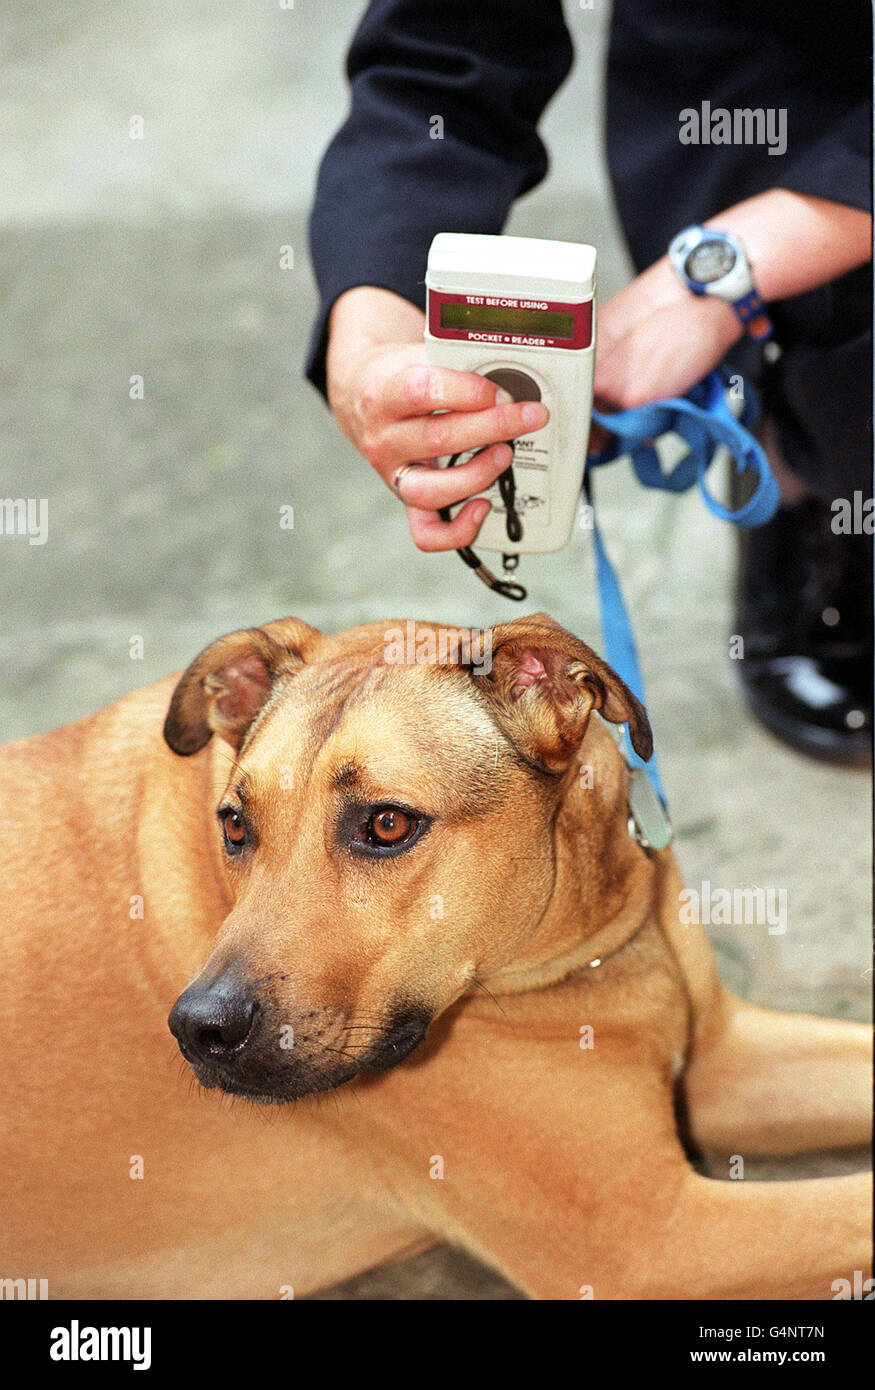 Der RSPCA-Hund Attilla lässt seinen Mikrochip während einer Fotozelle in London von einem Lesegerät lesen, um das Passports for Pets-Programm zu starten. Im Rahmen eines Pilotprojekts, das bis April 2000 eingeführt wird, werden Hunde und Katzen einen Pass erhalten, der sie für Tollwut-frei erklärt. * Hunde und Katzen, die gechipt wurden, einen Tollwutimpfstoff erhalten haben und einen Monat später einen Bluttest unterzogen wurden, werden mit einem von einem Tierarzt unterschriebenen und gestempelten Pass ausgestellt, um ihn für Tollwutfrei zu erklären. Es wird dann erlaubt sein, ins Ausland zu reisen und über die Kanalhäfen und den Flughafen Heathrow wieder nach Großbritannien einzureisen, solange er ein erhält Stockfoto